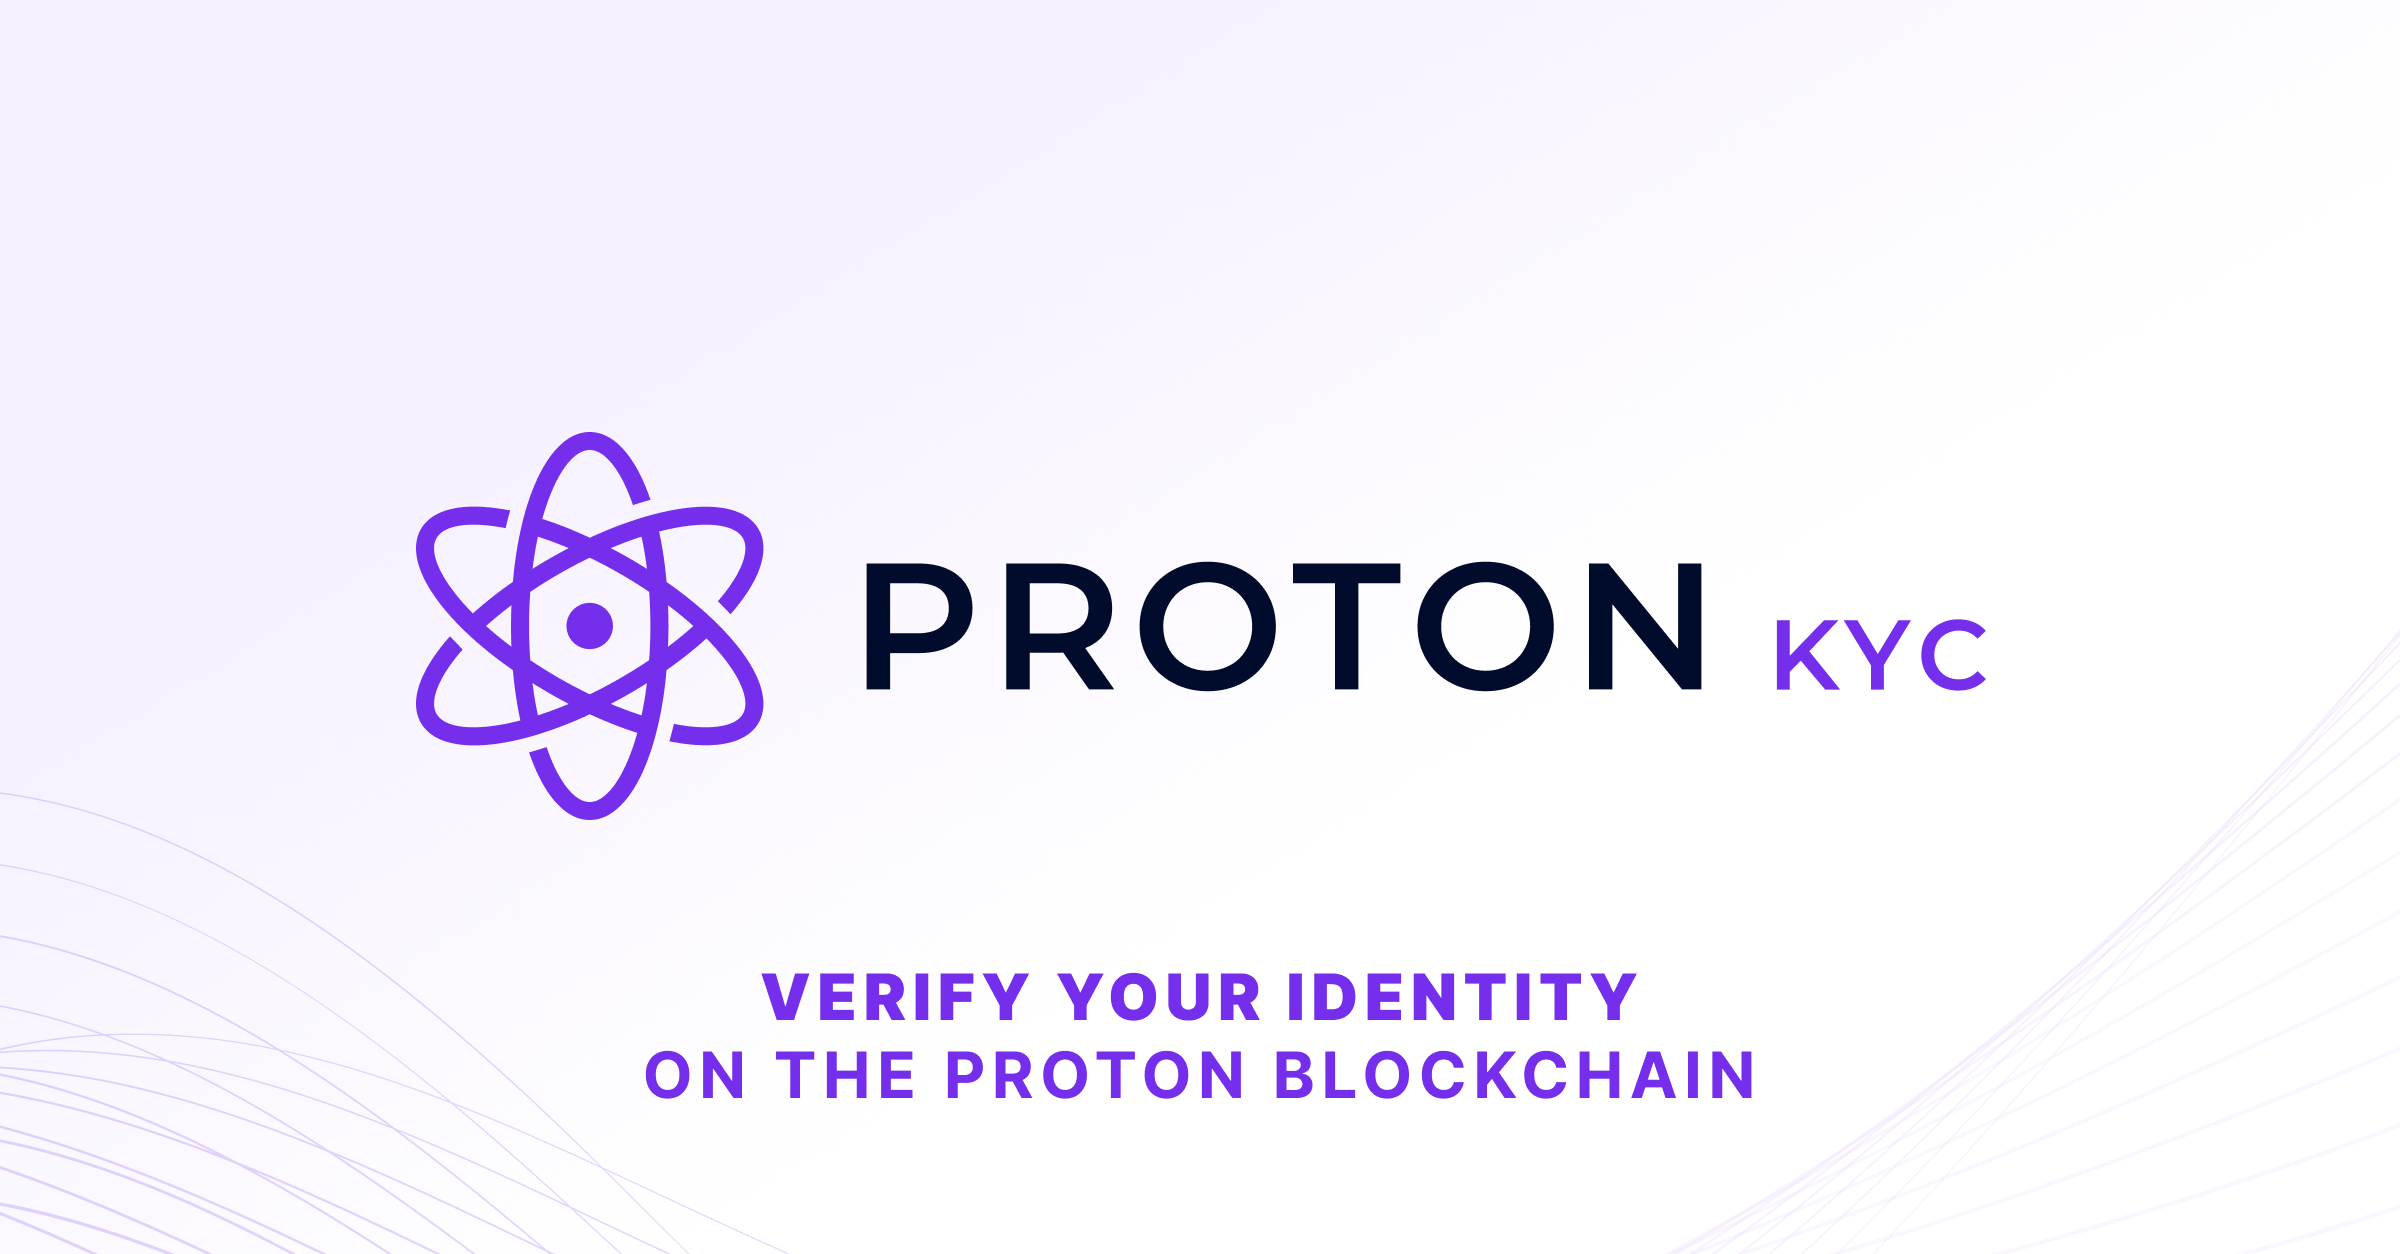 Proton KYC